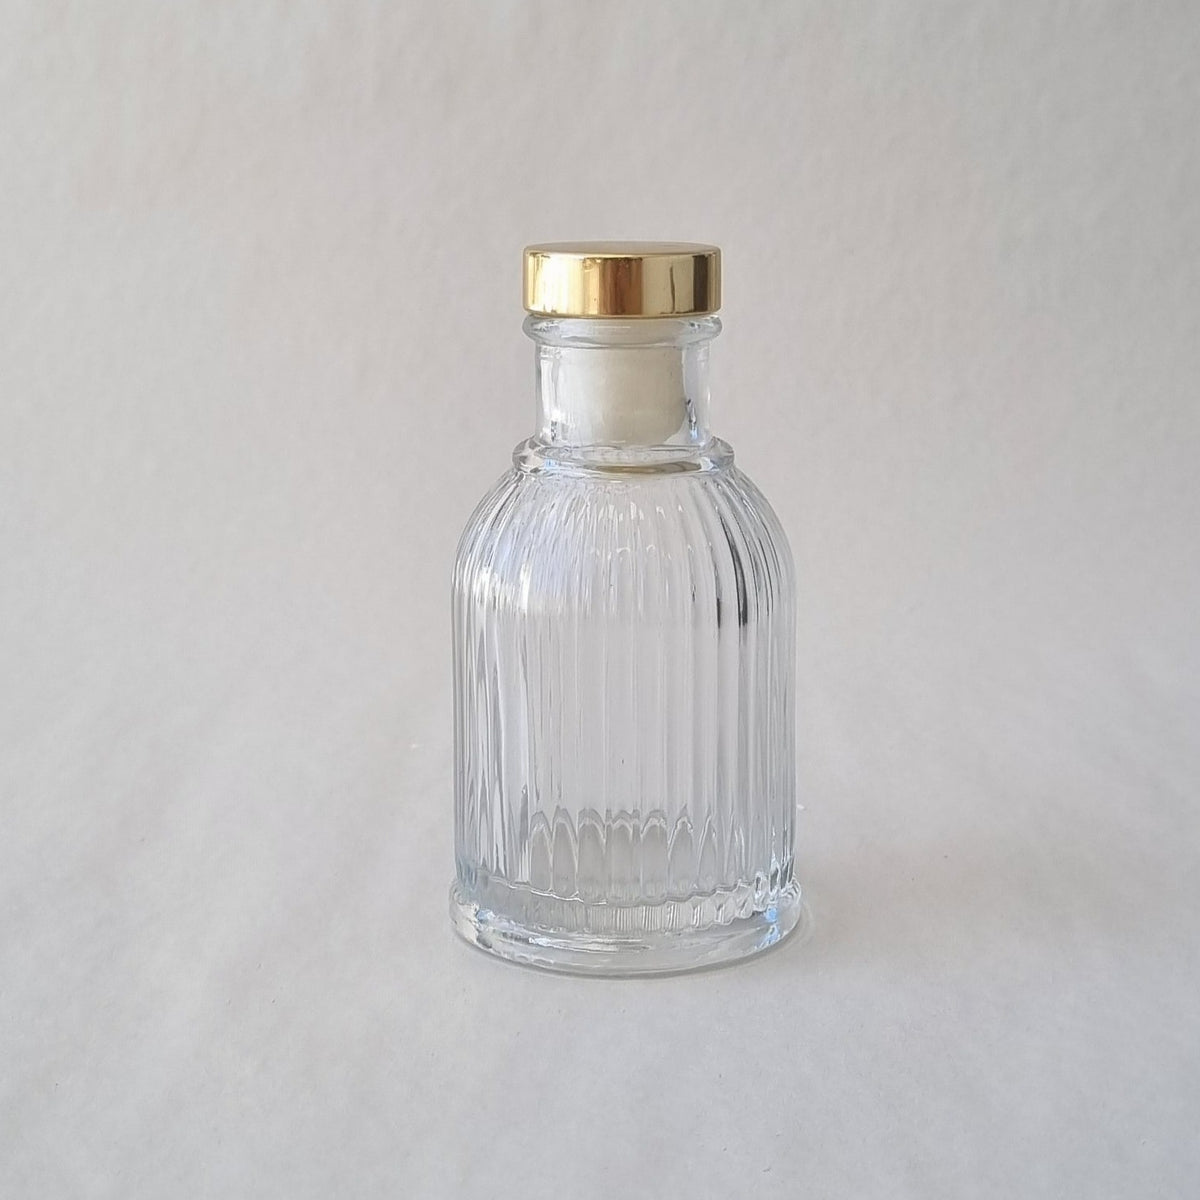 Diffuser Bottle - Fluted Short 100ml - Gold Lid